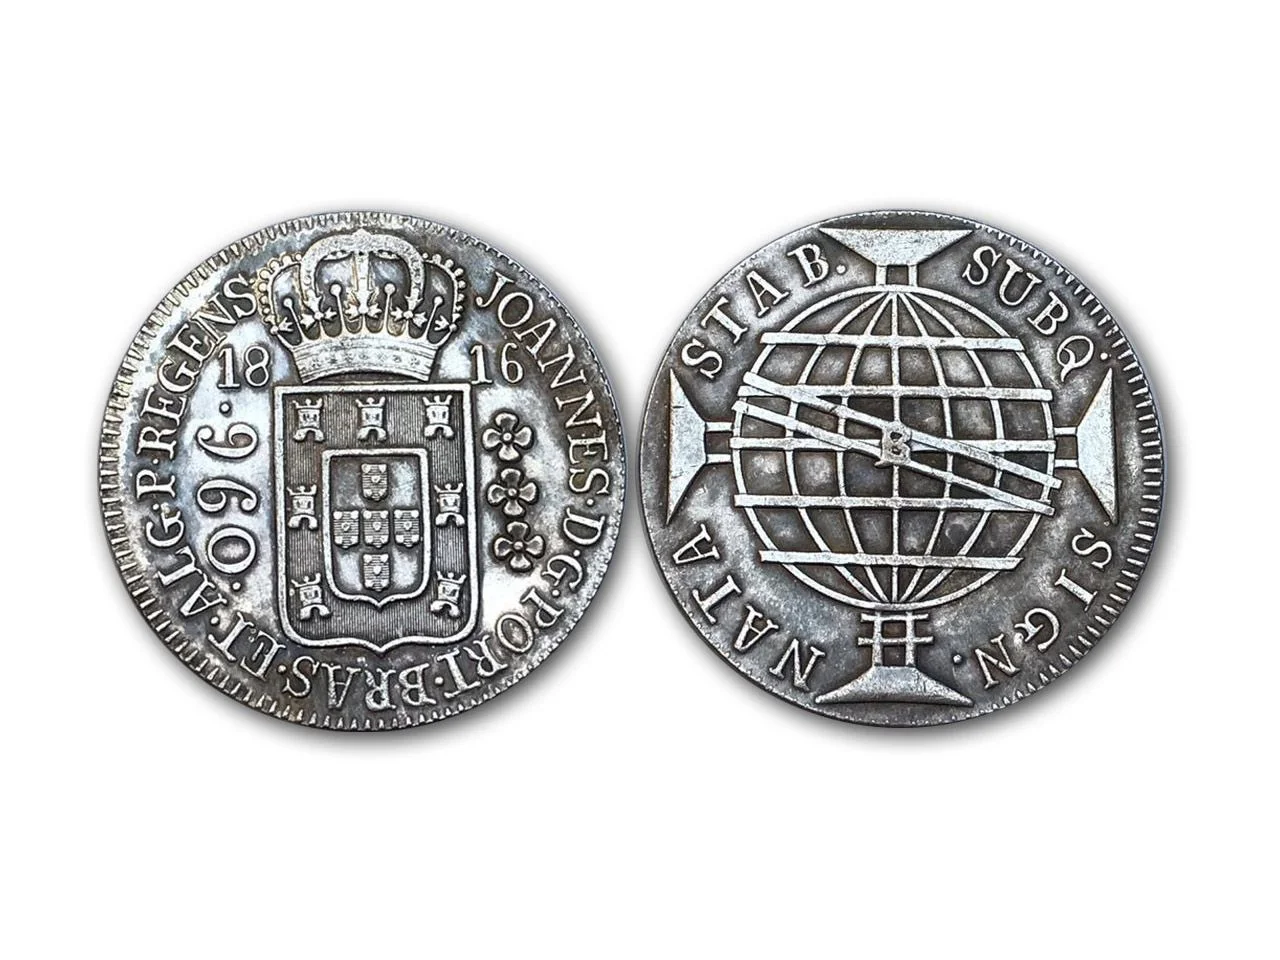 Réplica de uma moeda de 960 réis, conhecida como patacão. (Imagem: seteprint.com.br)